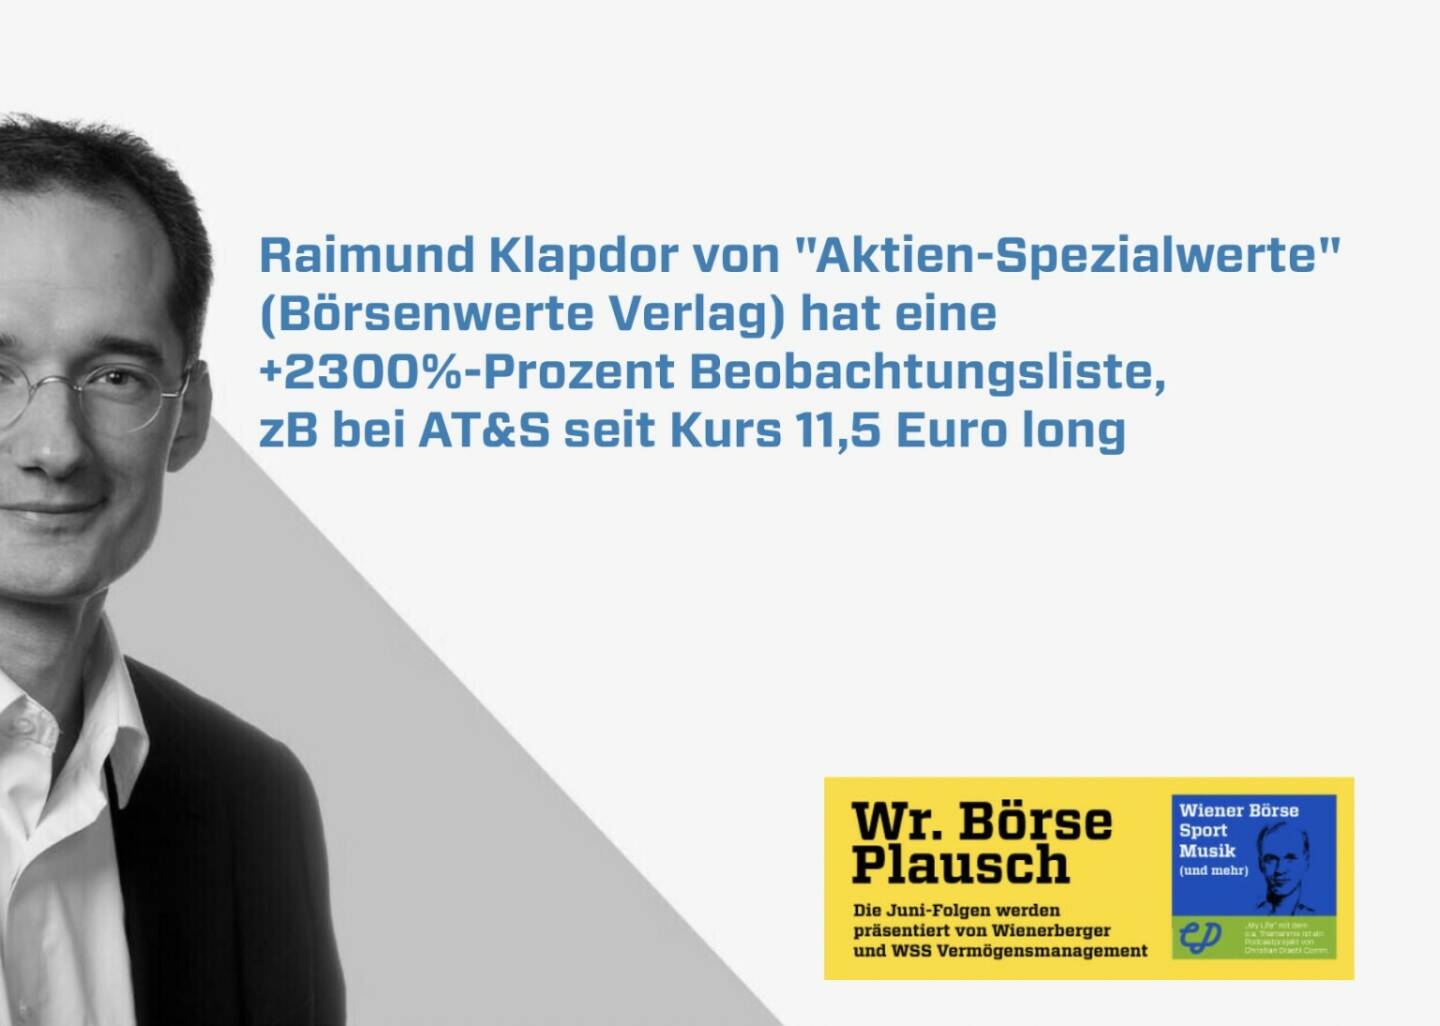 Raimund Klapdor von Aktien-Spezialwerte (Börsenwerte Verlag) hat eine +2300%-Prozent Beobachtungsliste, zB bei AT&S seit Kurs 11,5 Euro long. Mehr in Folge S2/104 der Wiener Börse Pläusche im Rahmen von http://www.christian-drastil.com/podcast .